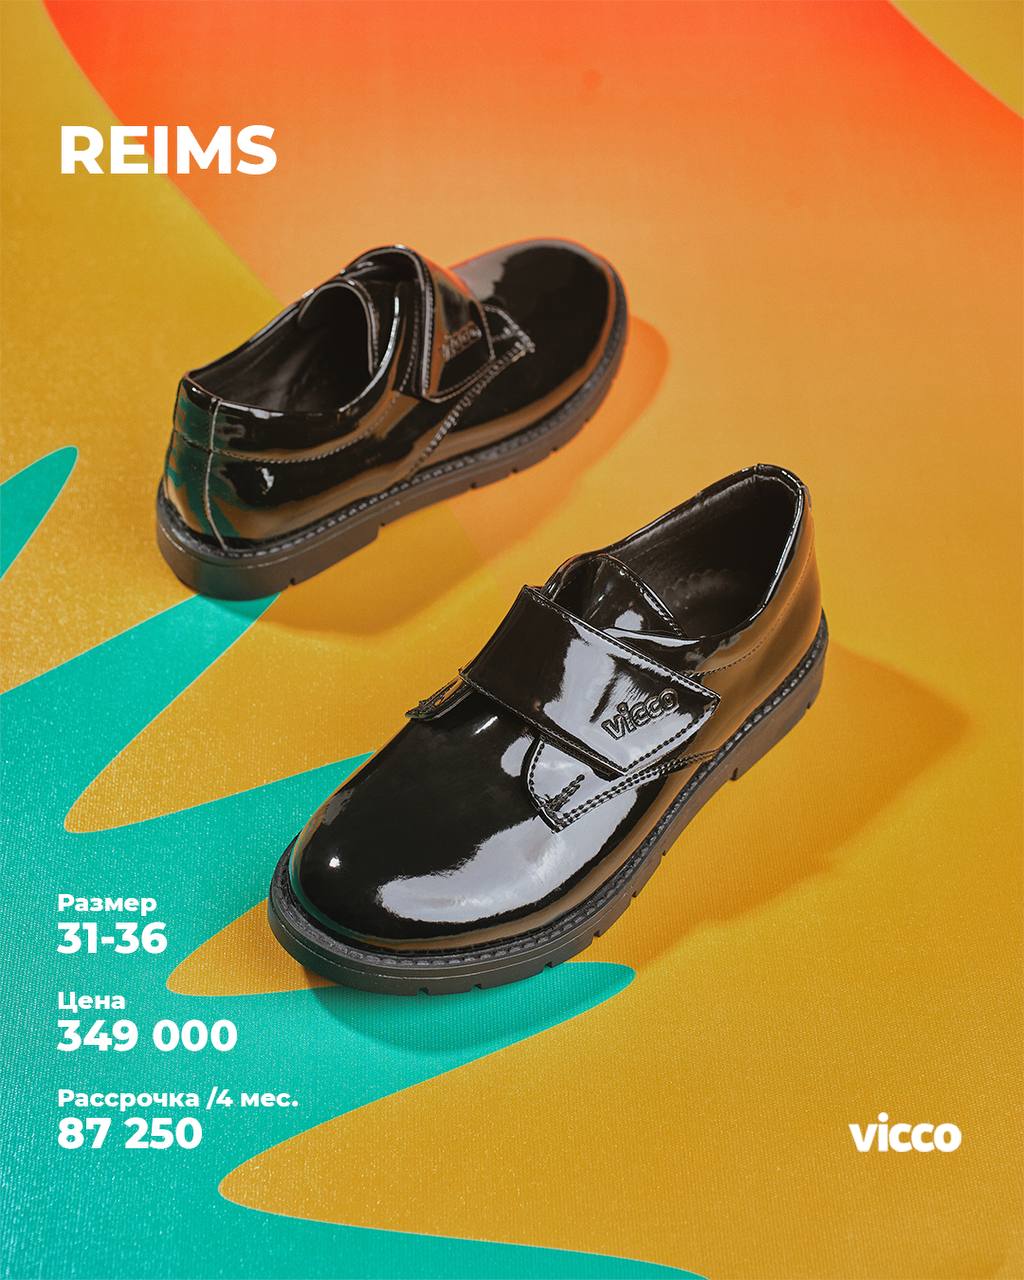 Купить школьную обувь - Коллекция Reims